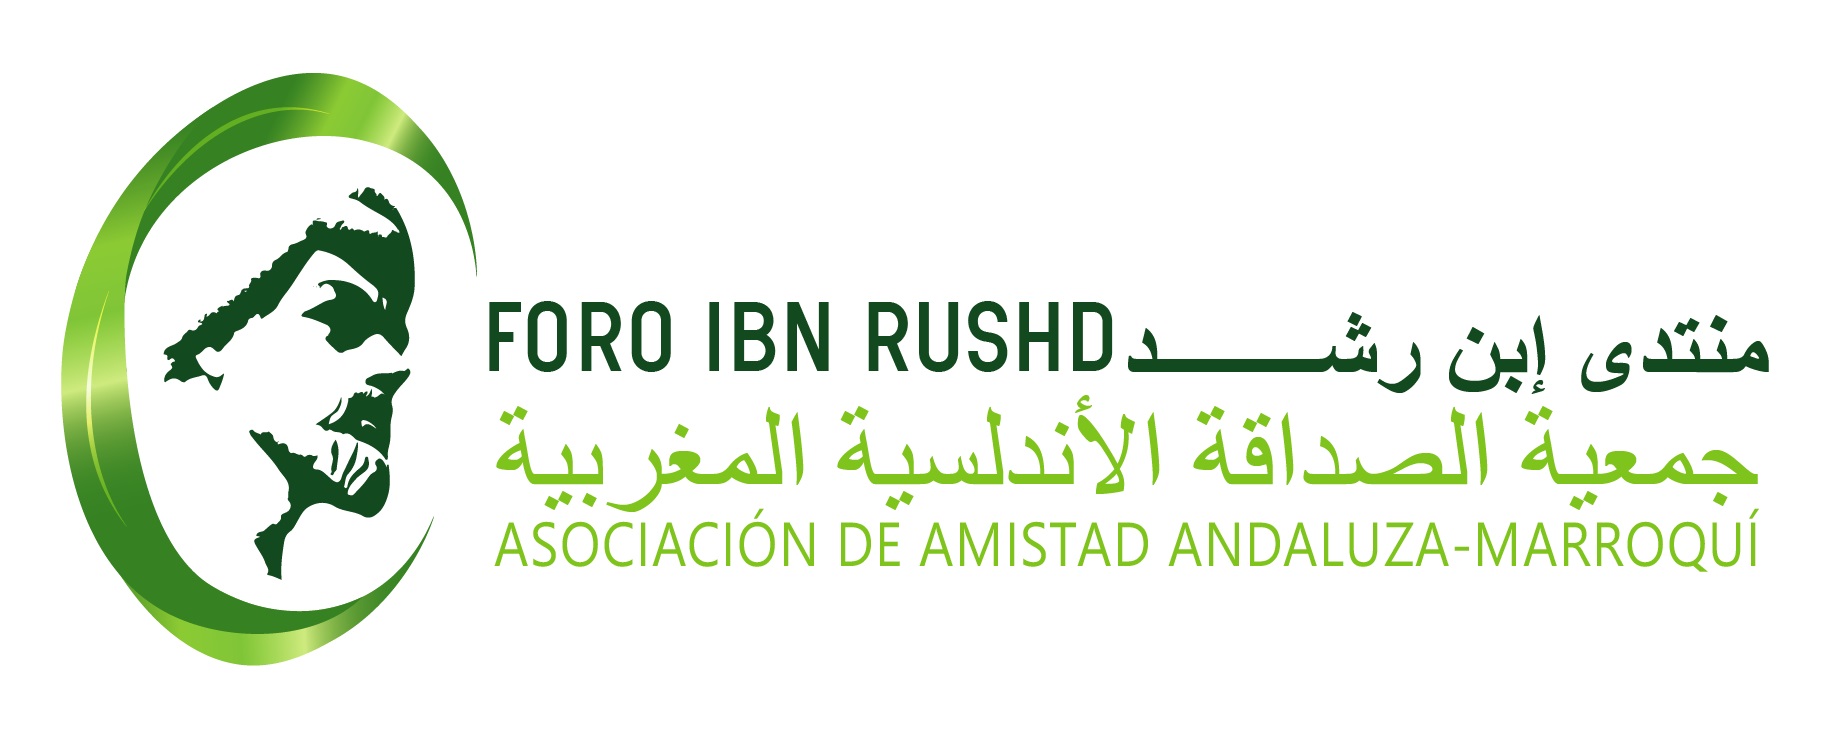 Asociación de Amistad Andaluza Marroquí – Foro Ibn Rushd